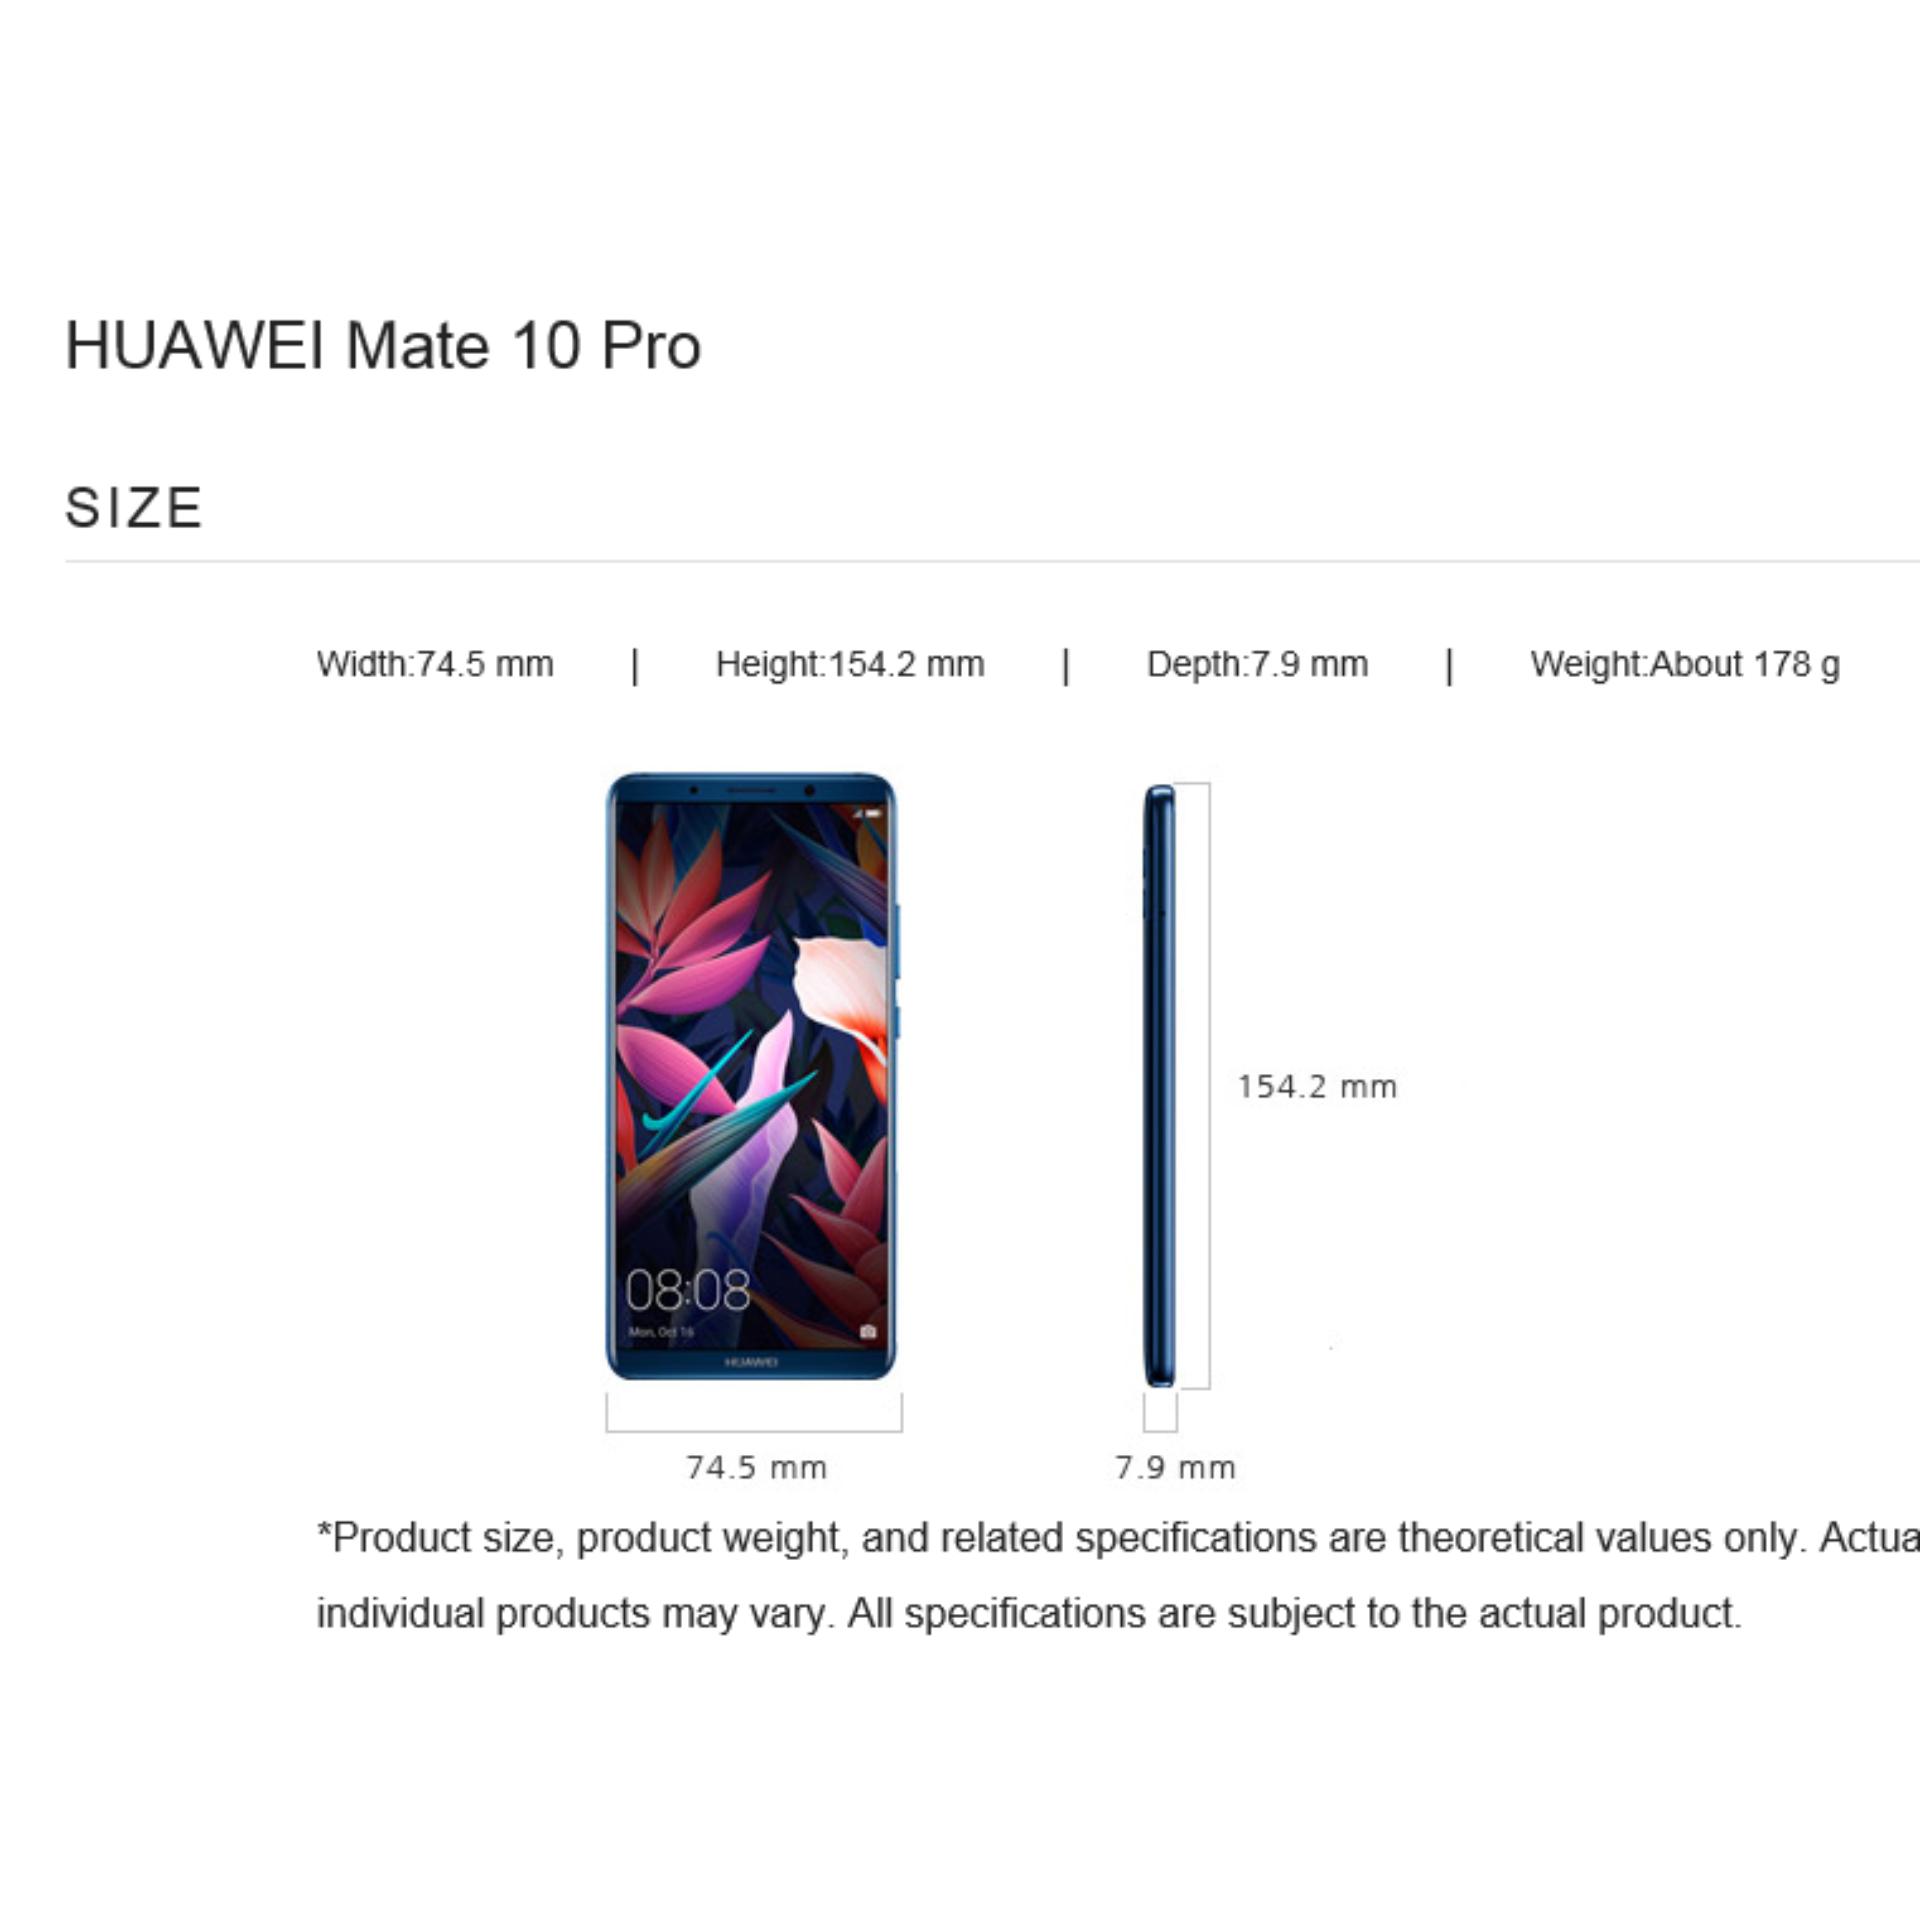 HUAWEI MATE 10 PRO 6GB RAM/128GB - MOCHA BROWN